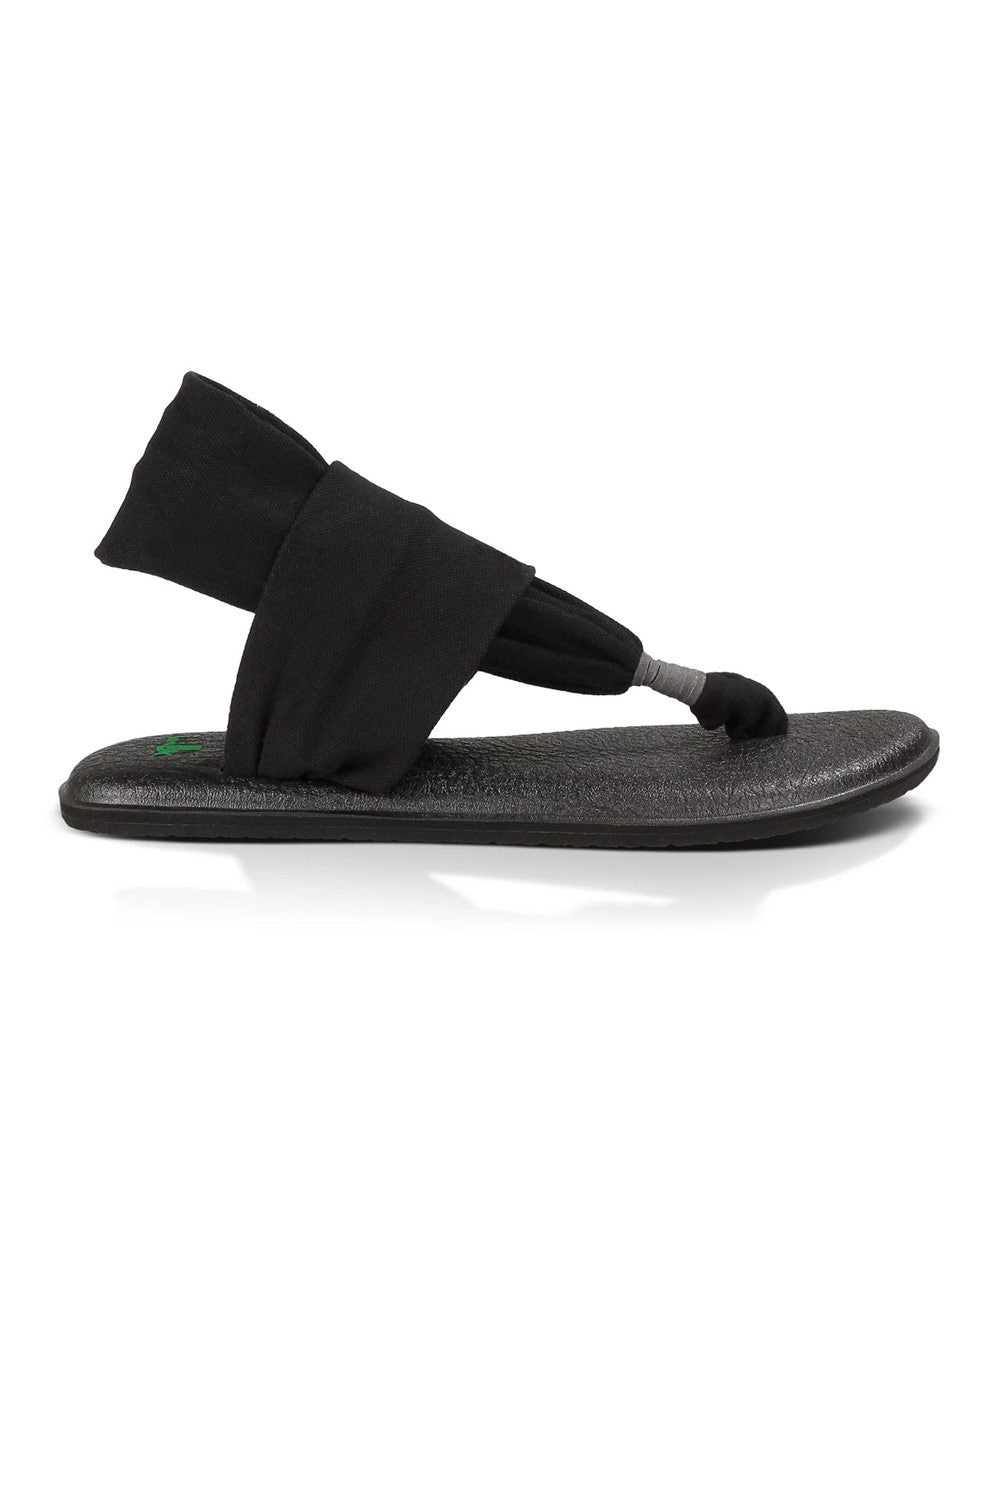 SANUK Women's Yoga Sling 2 Sandals